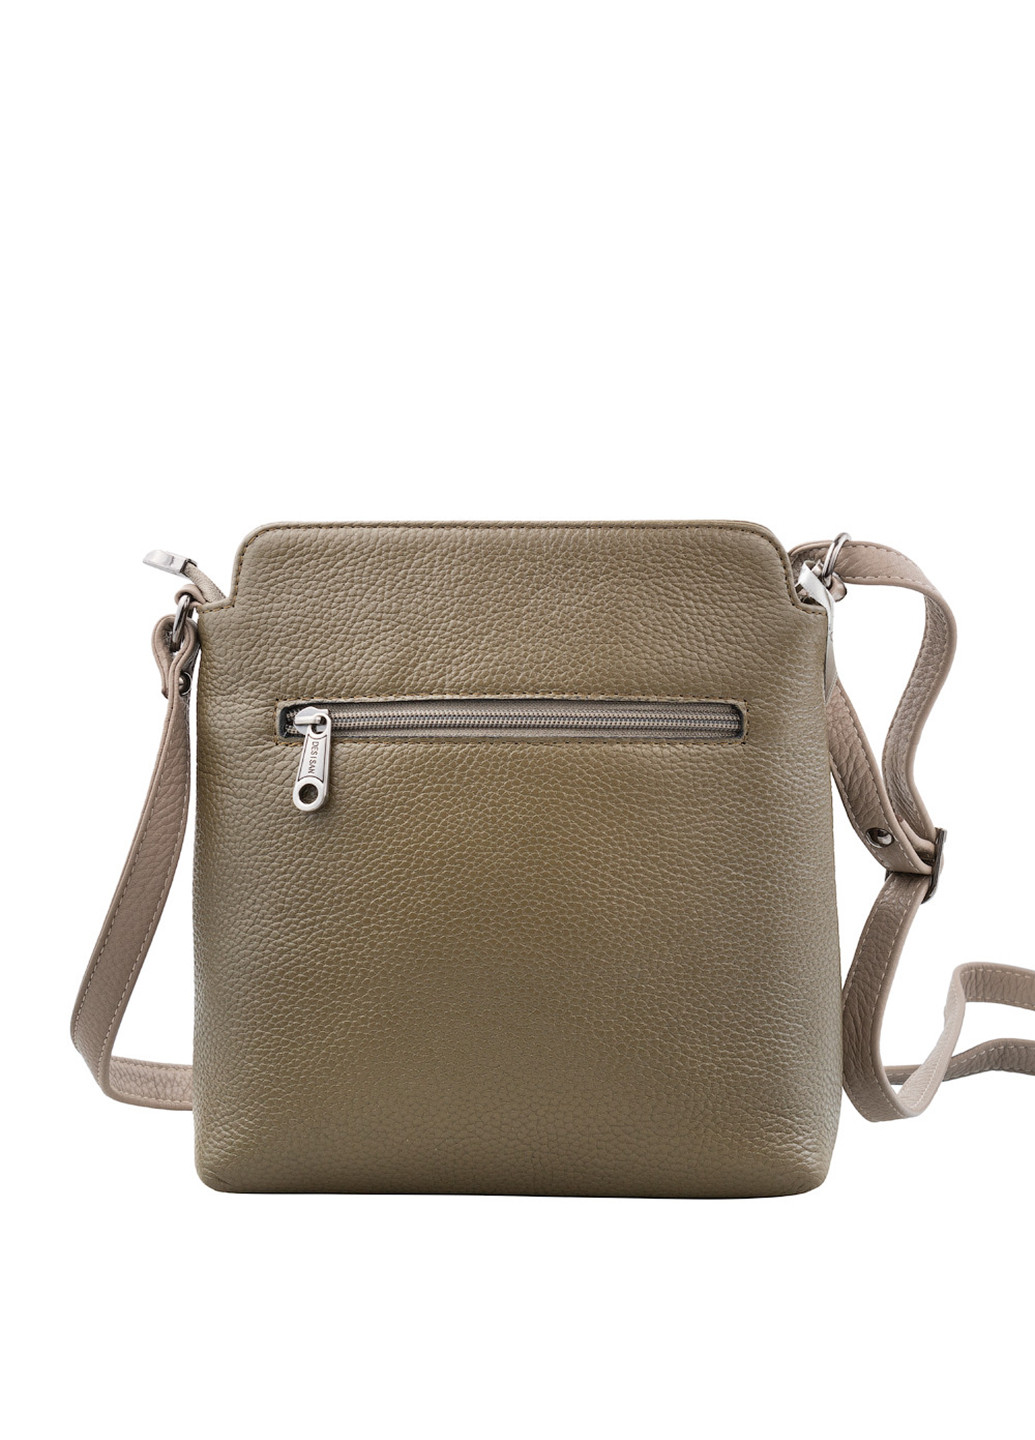 Жіноча шкіряна сумка-планшет 19х23х5,5 см Desisan (252127595)